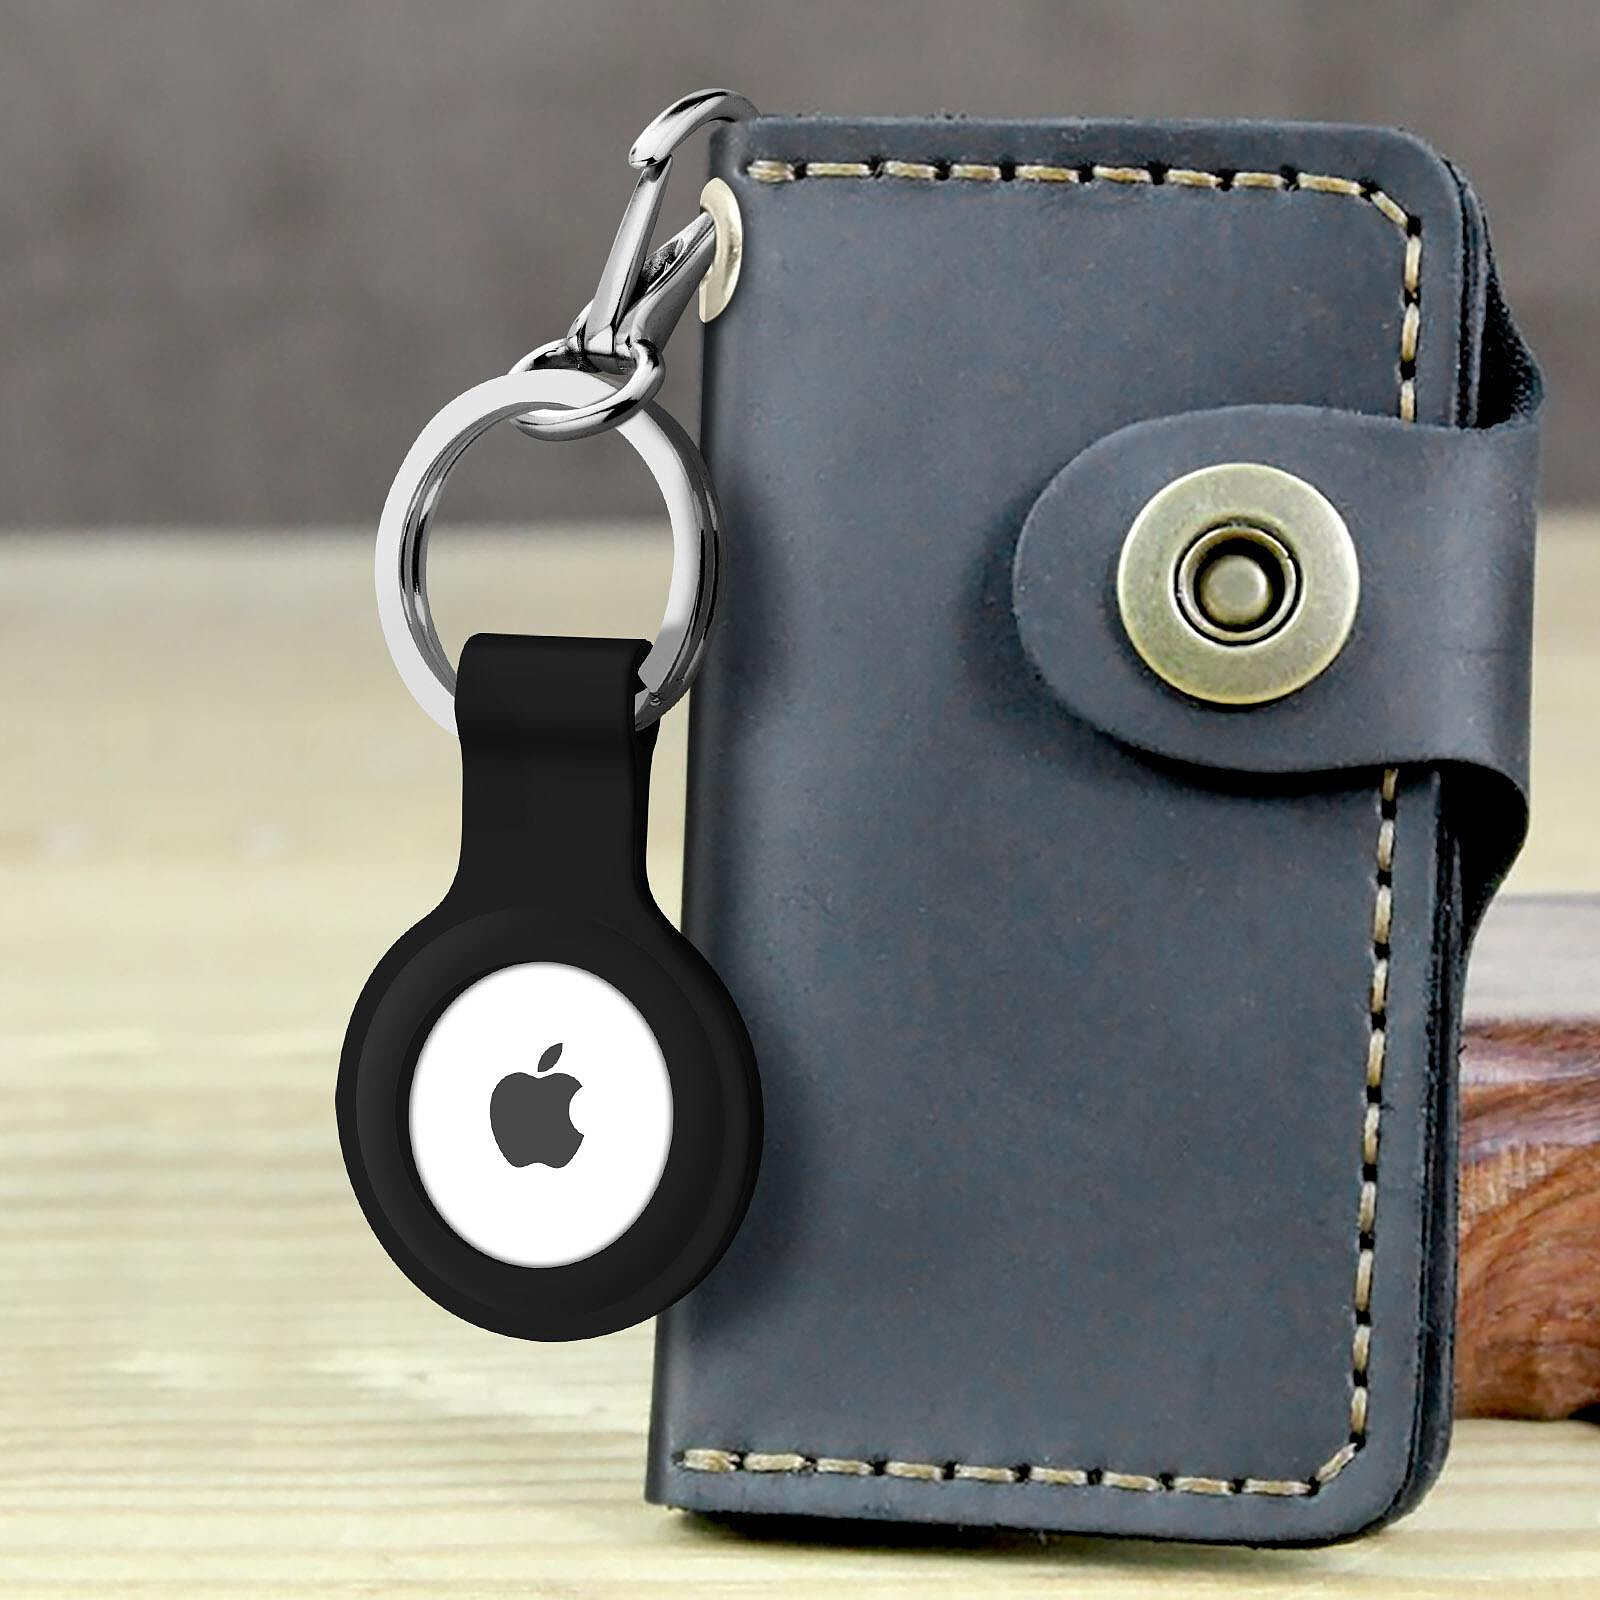 Porte-clés pour Apple AirTag -ID19512 gris pas cher